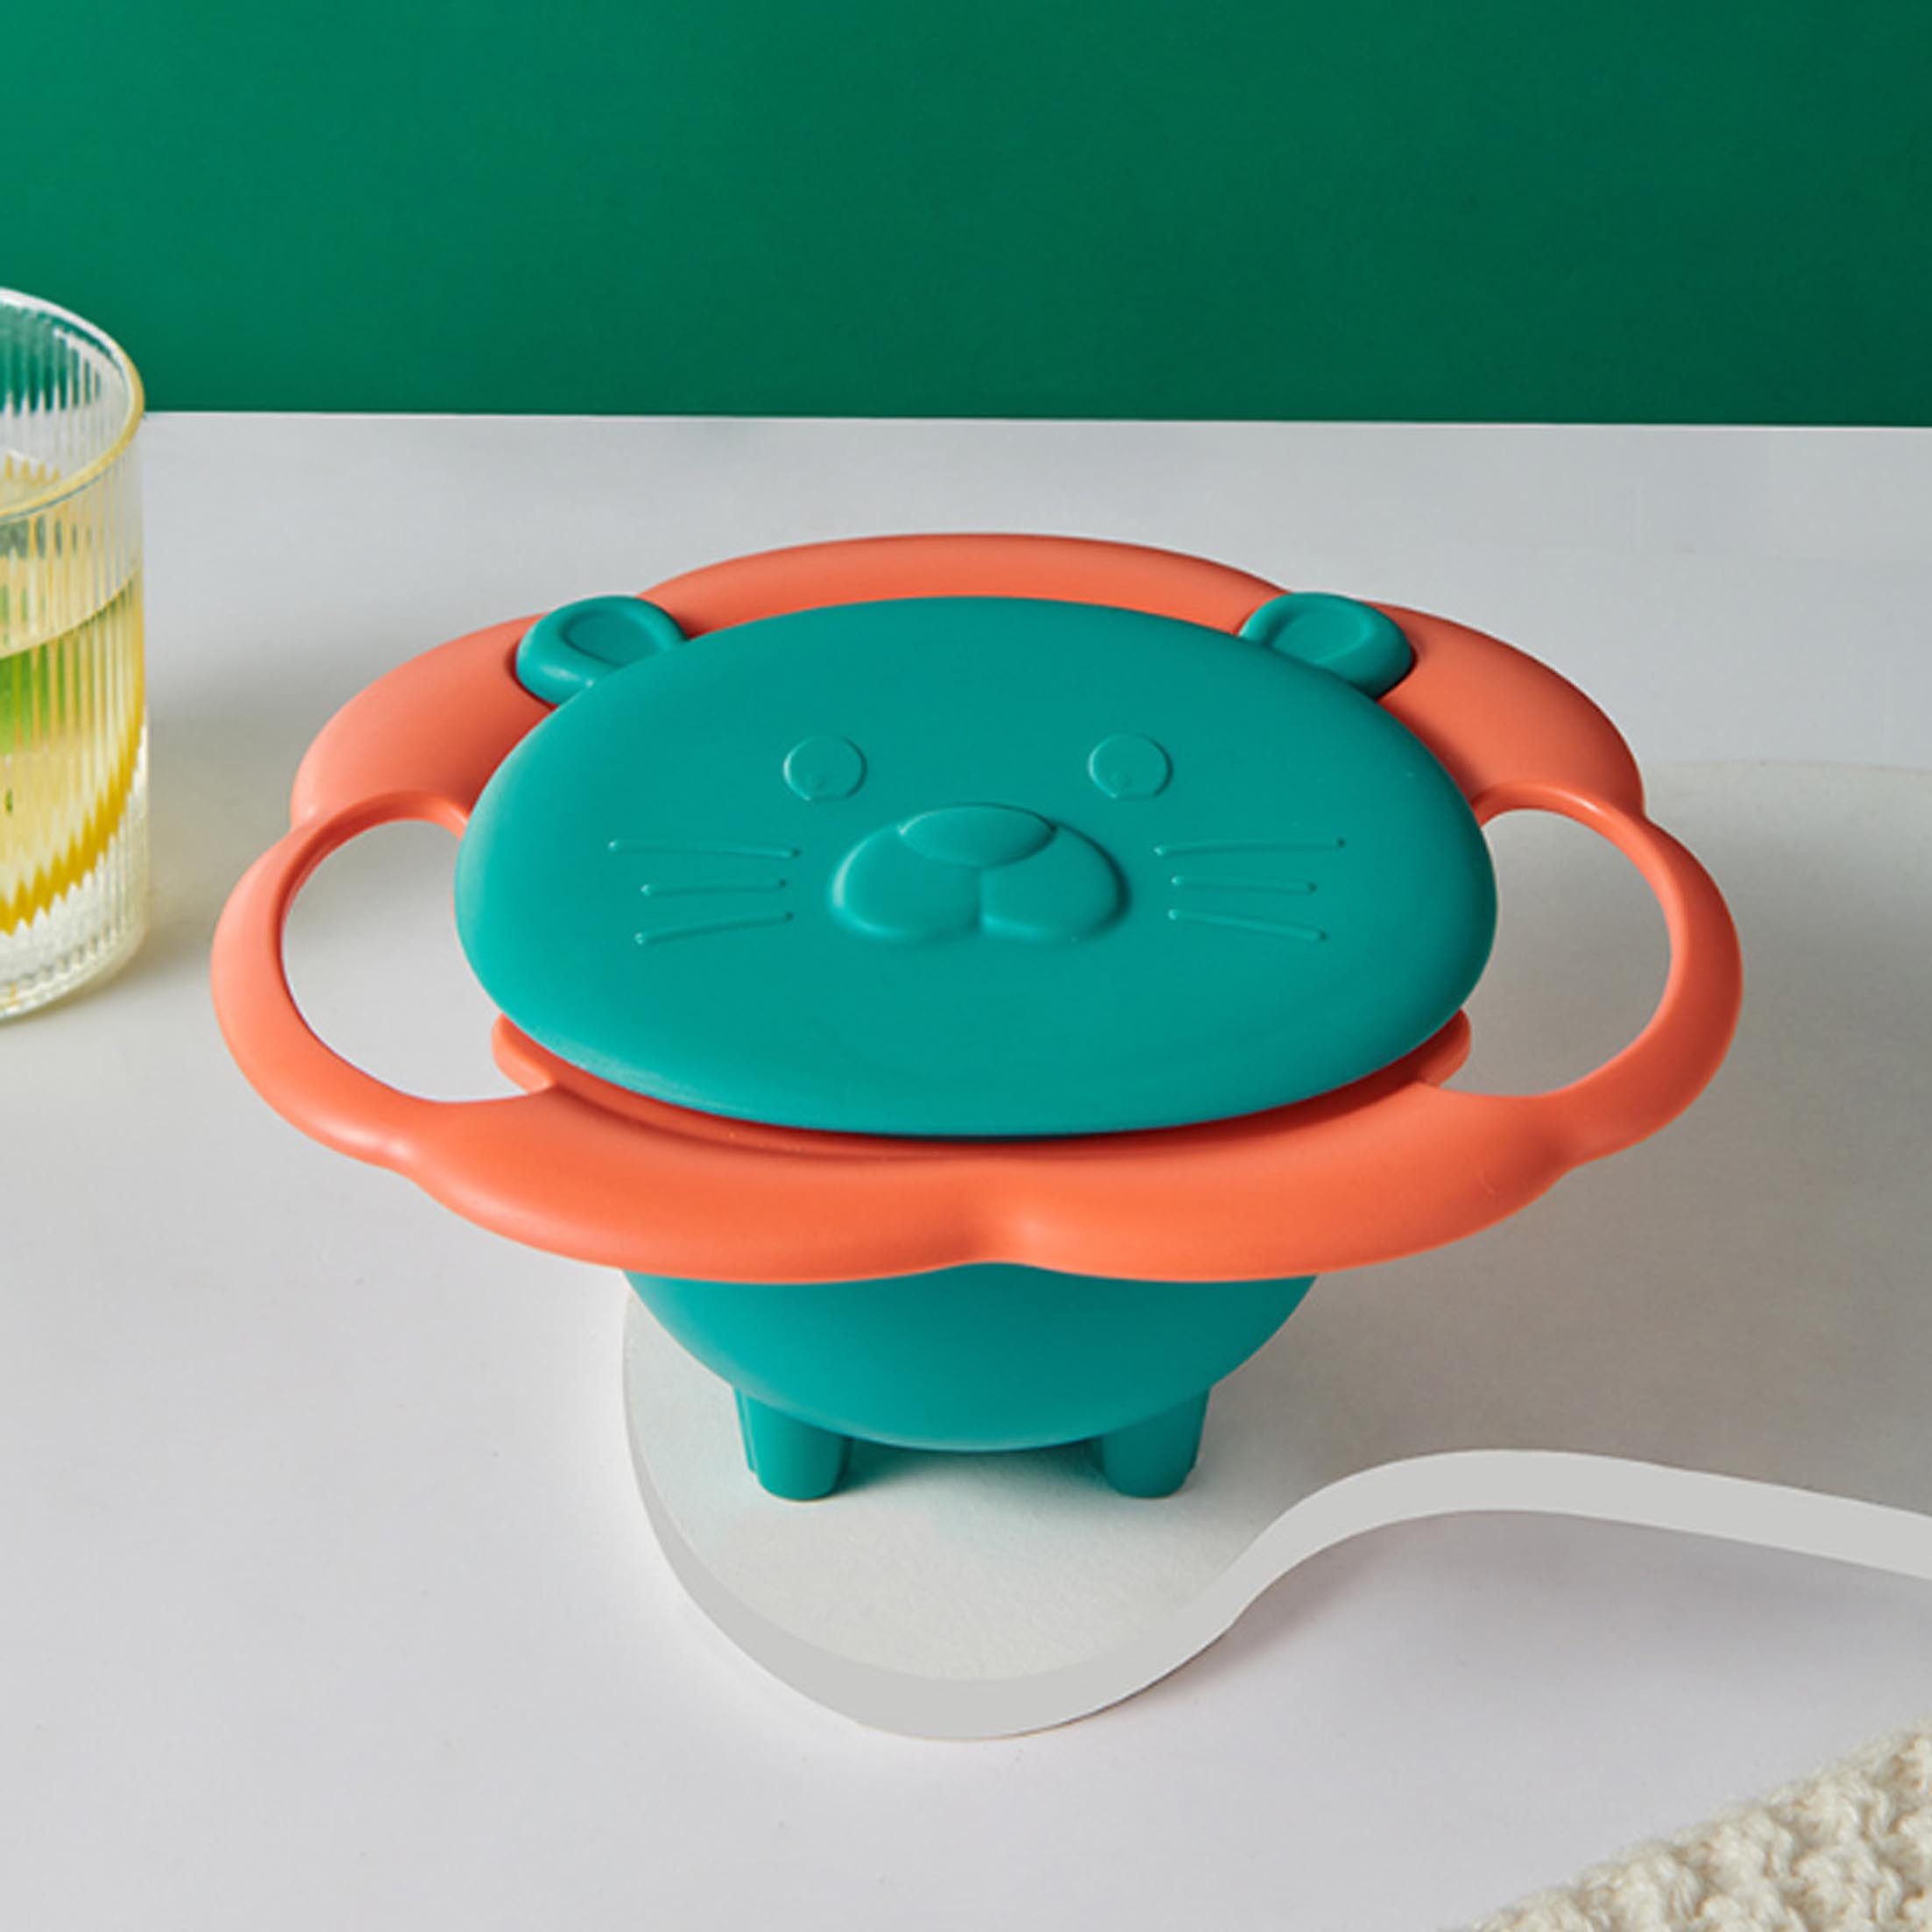 KÜLER Kinderschüssel Kippsichere Schale für Kinder, Baby-Ergänzungsgeschirr, auslaufsicher, 360-Grad-Drehung ohne Herunterfallen